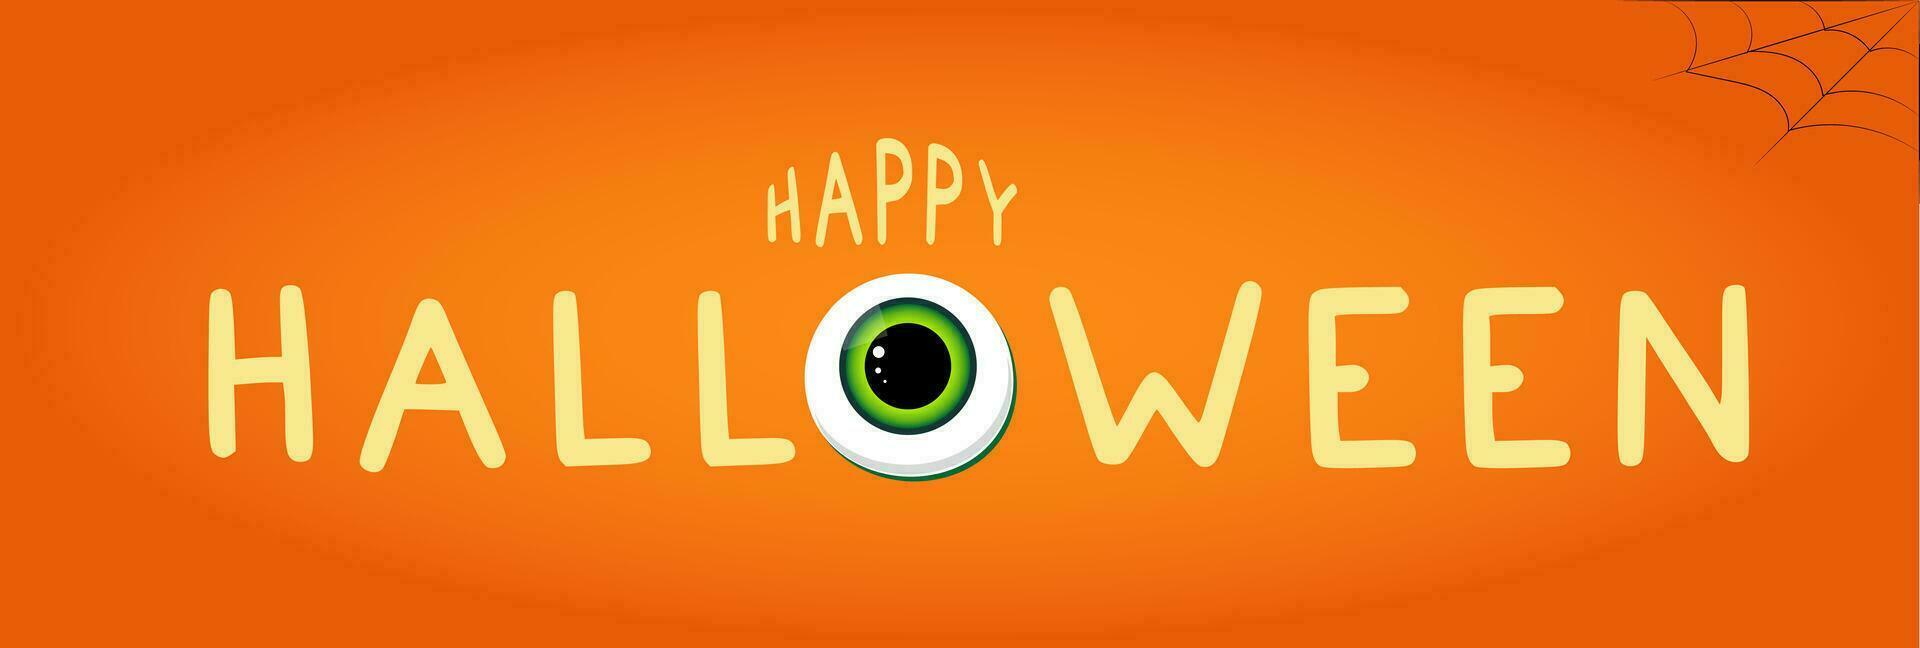 Lycklig halloween text och en stor öga istället av en brev och en Spindel webb i de hörn. vektor illustration med orange bakgrund